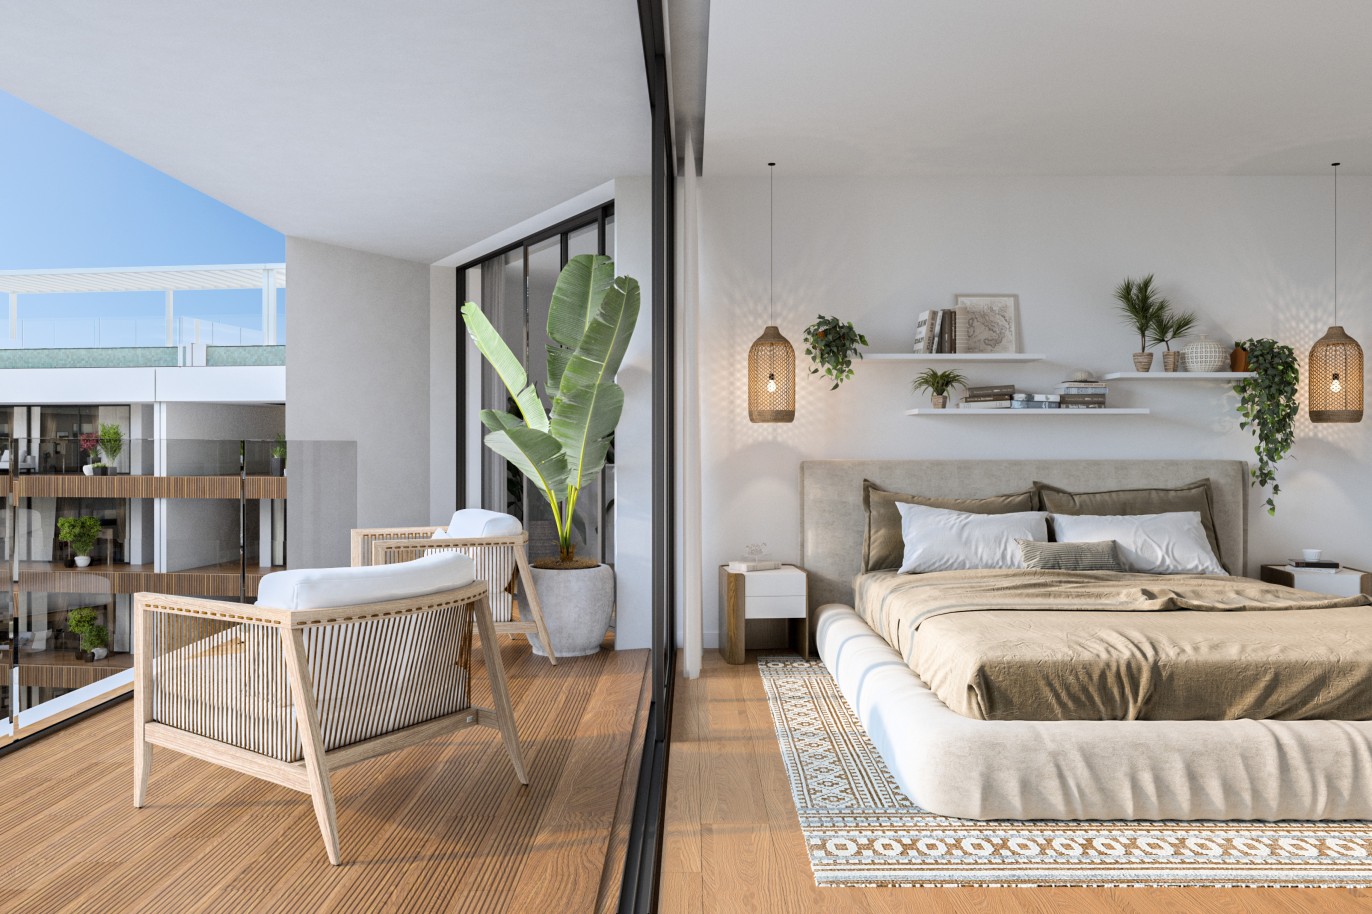 Appartements neufs avec vue sur mer, 1, 2 & 3 chambres, à vendre à Olhão, Algarve_244194